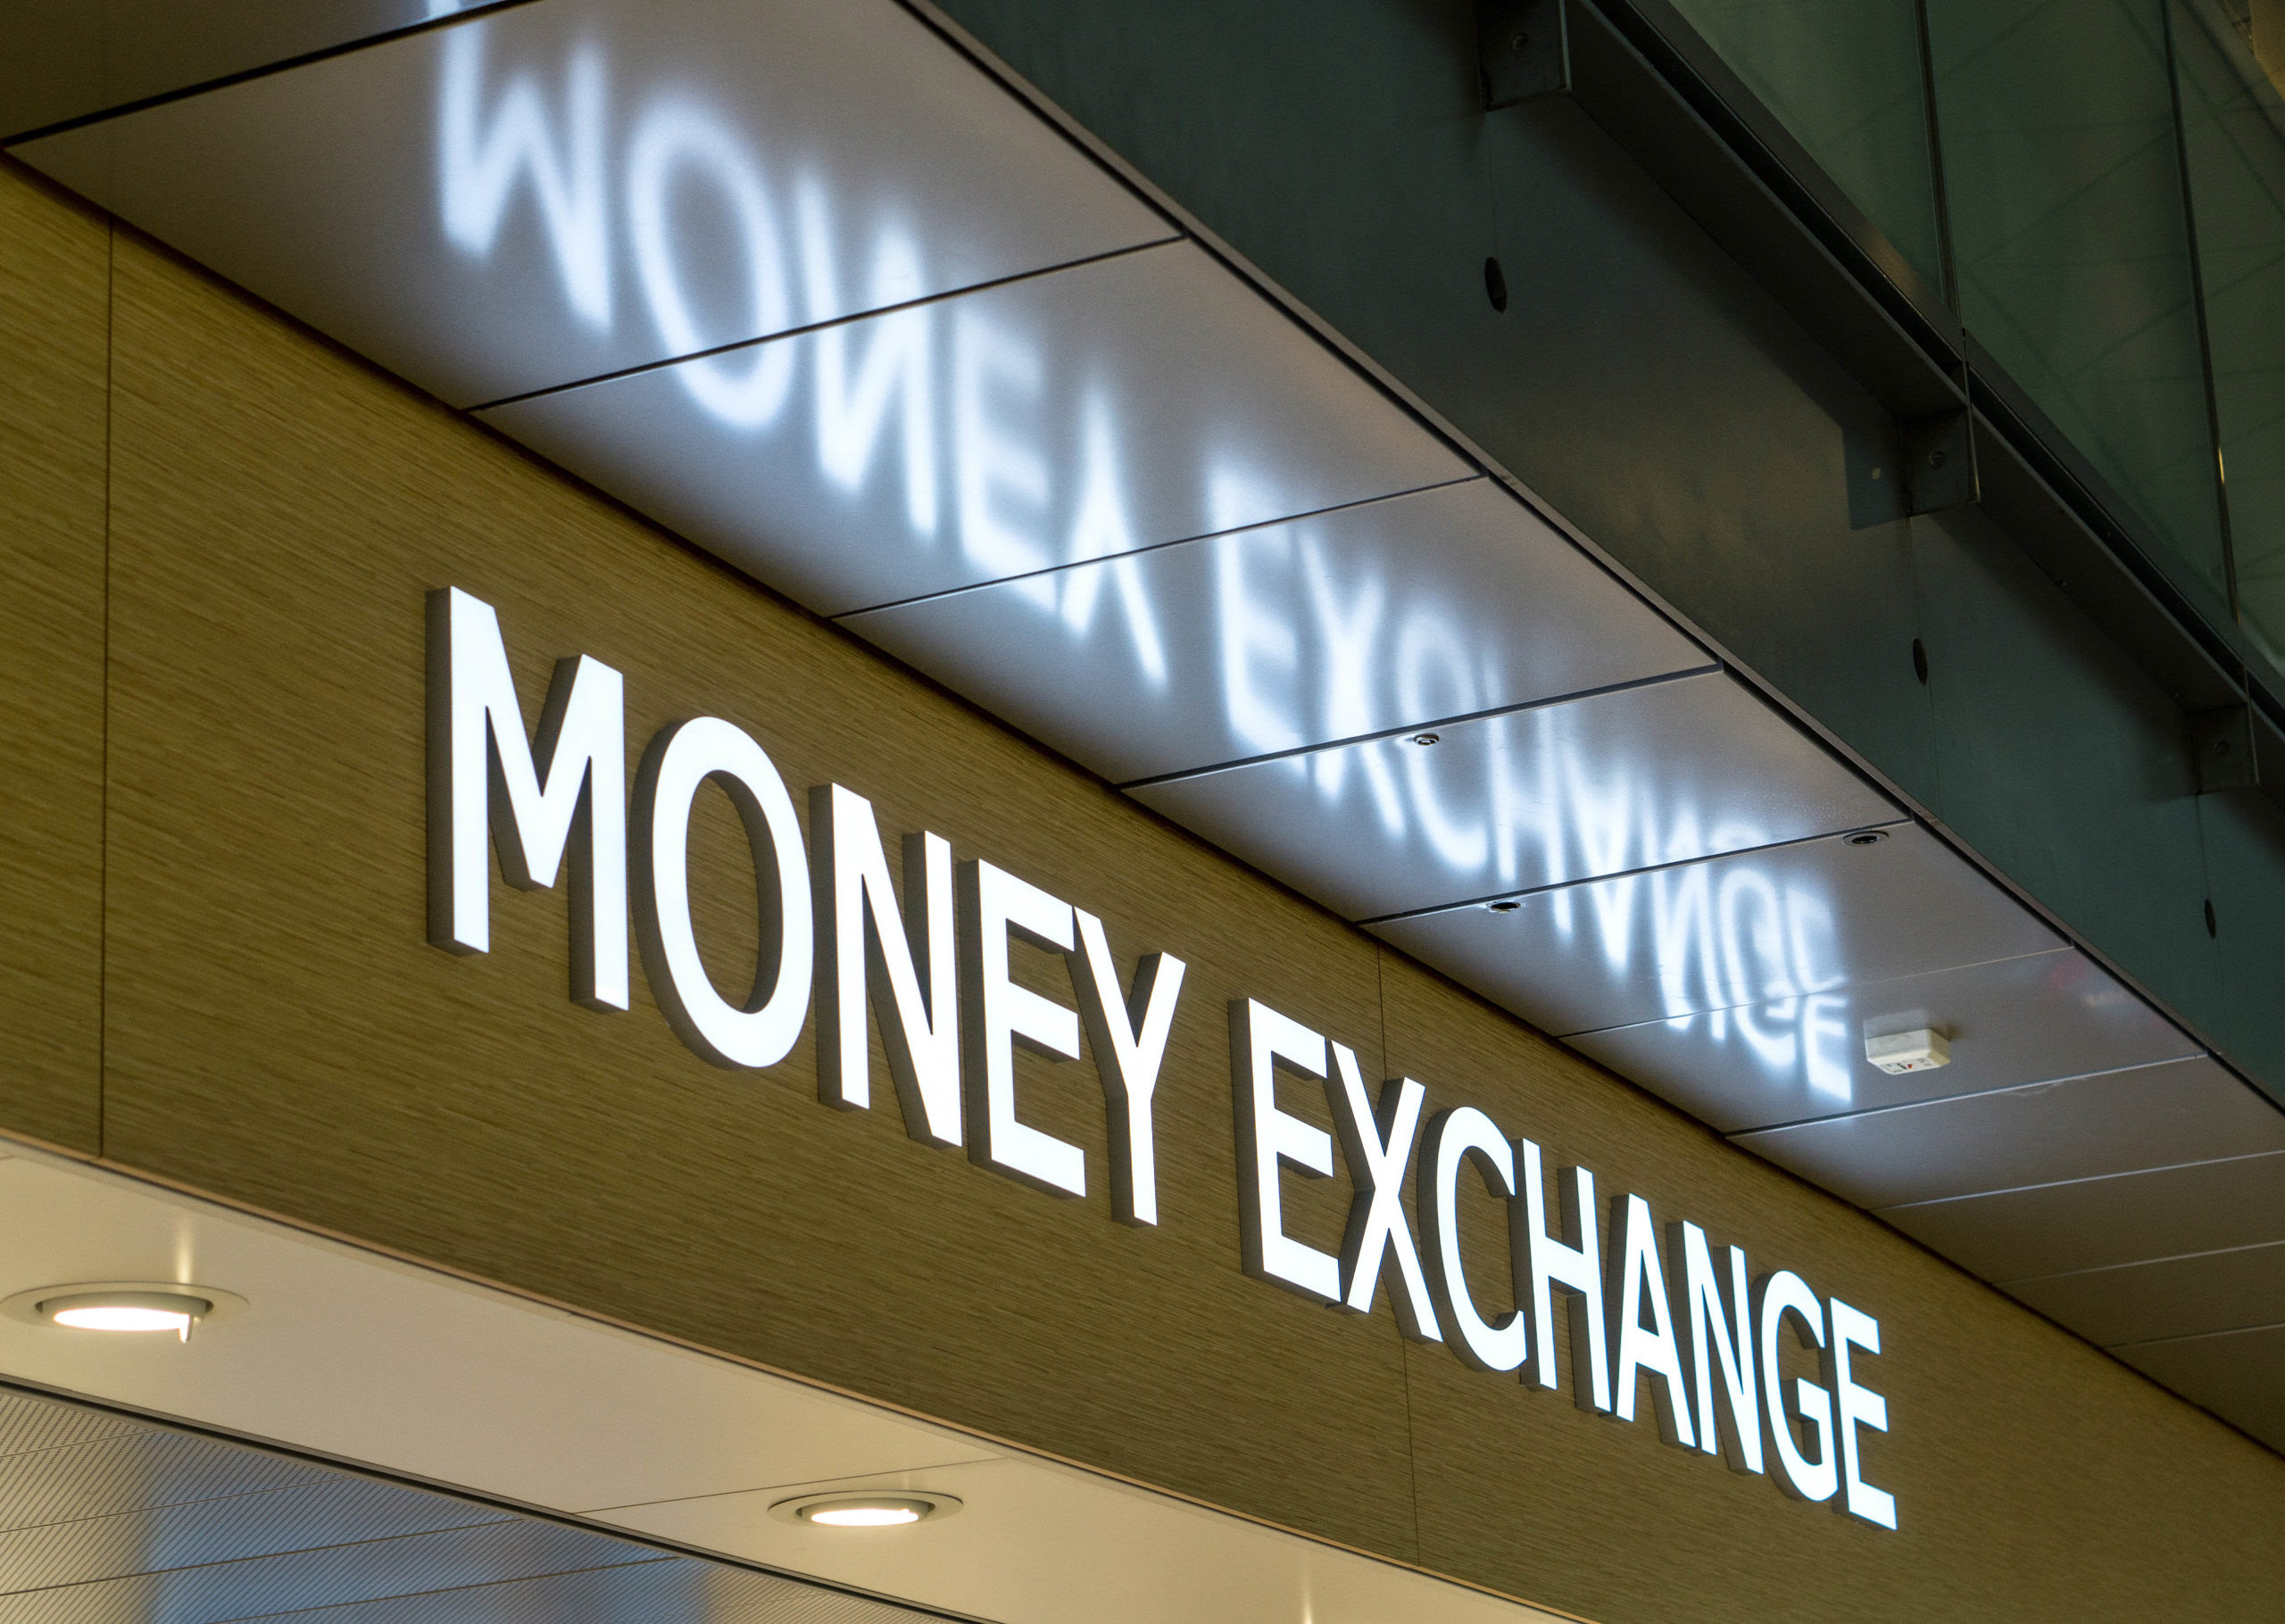 Airport money exchange sign